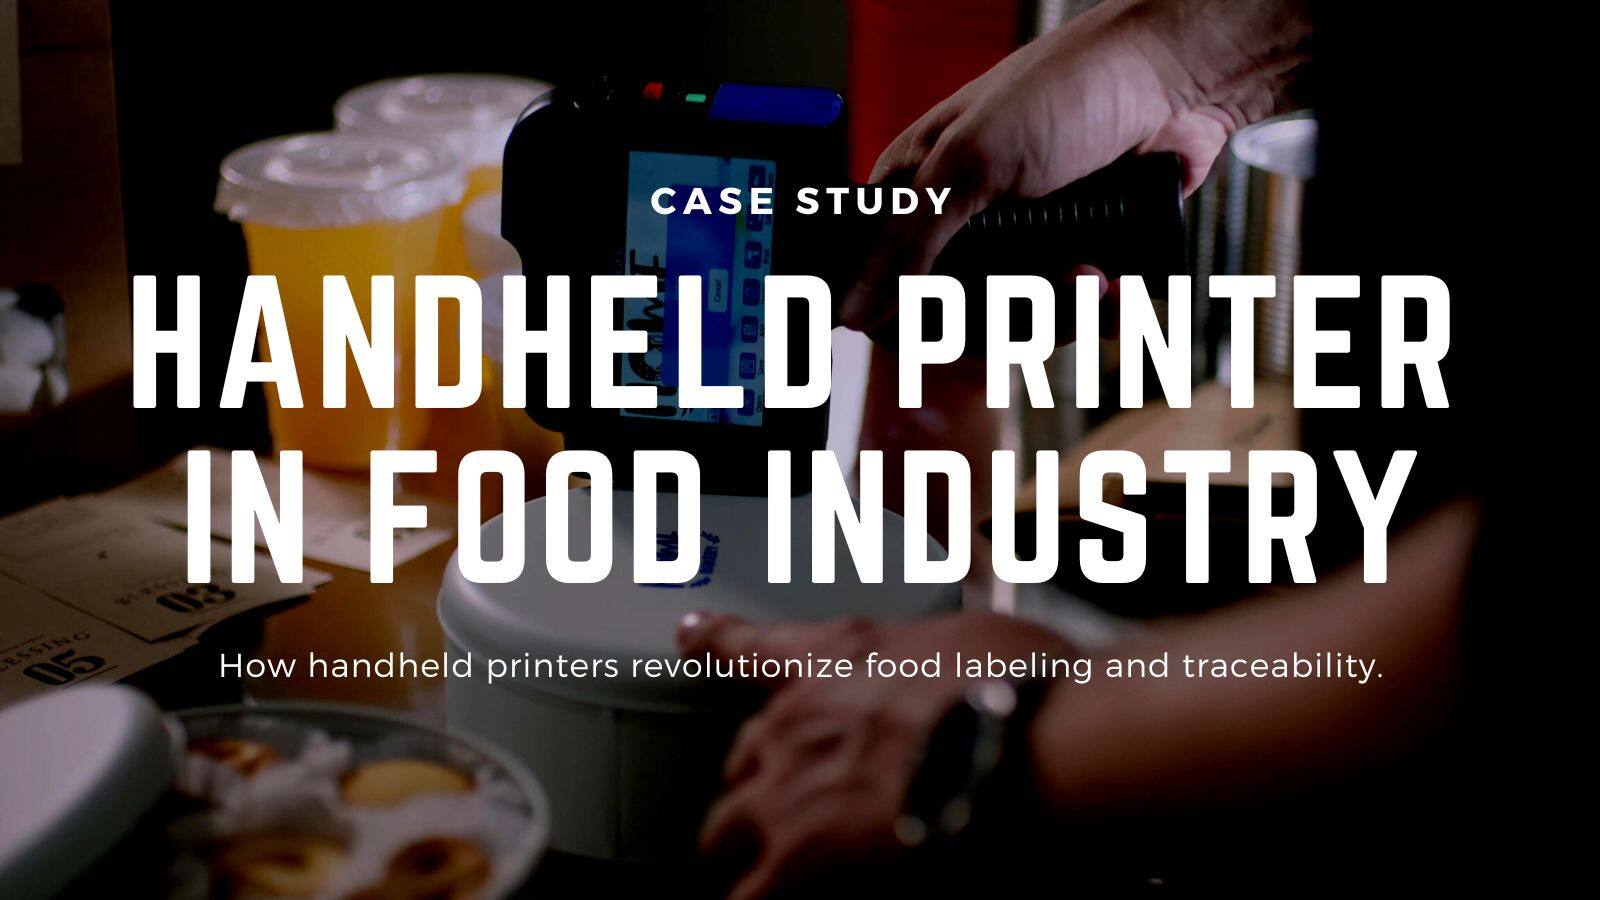 Handheld printer applications in food industry